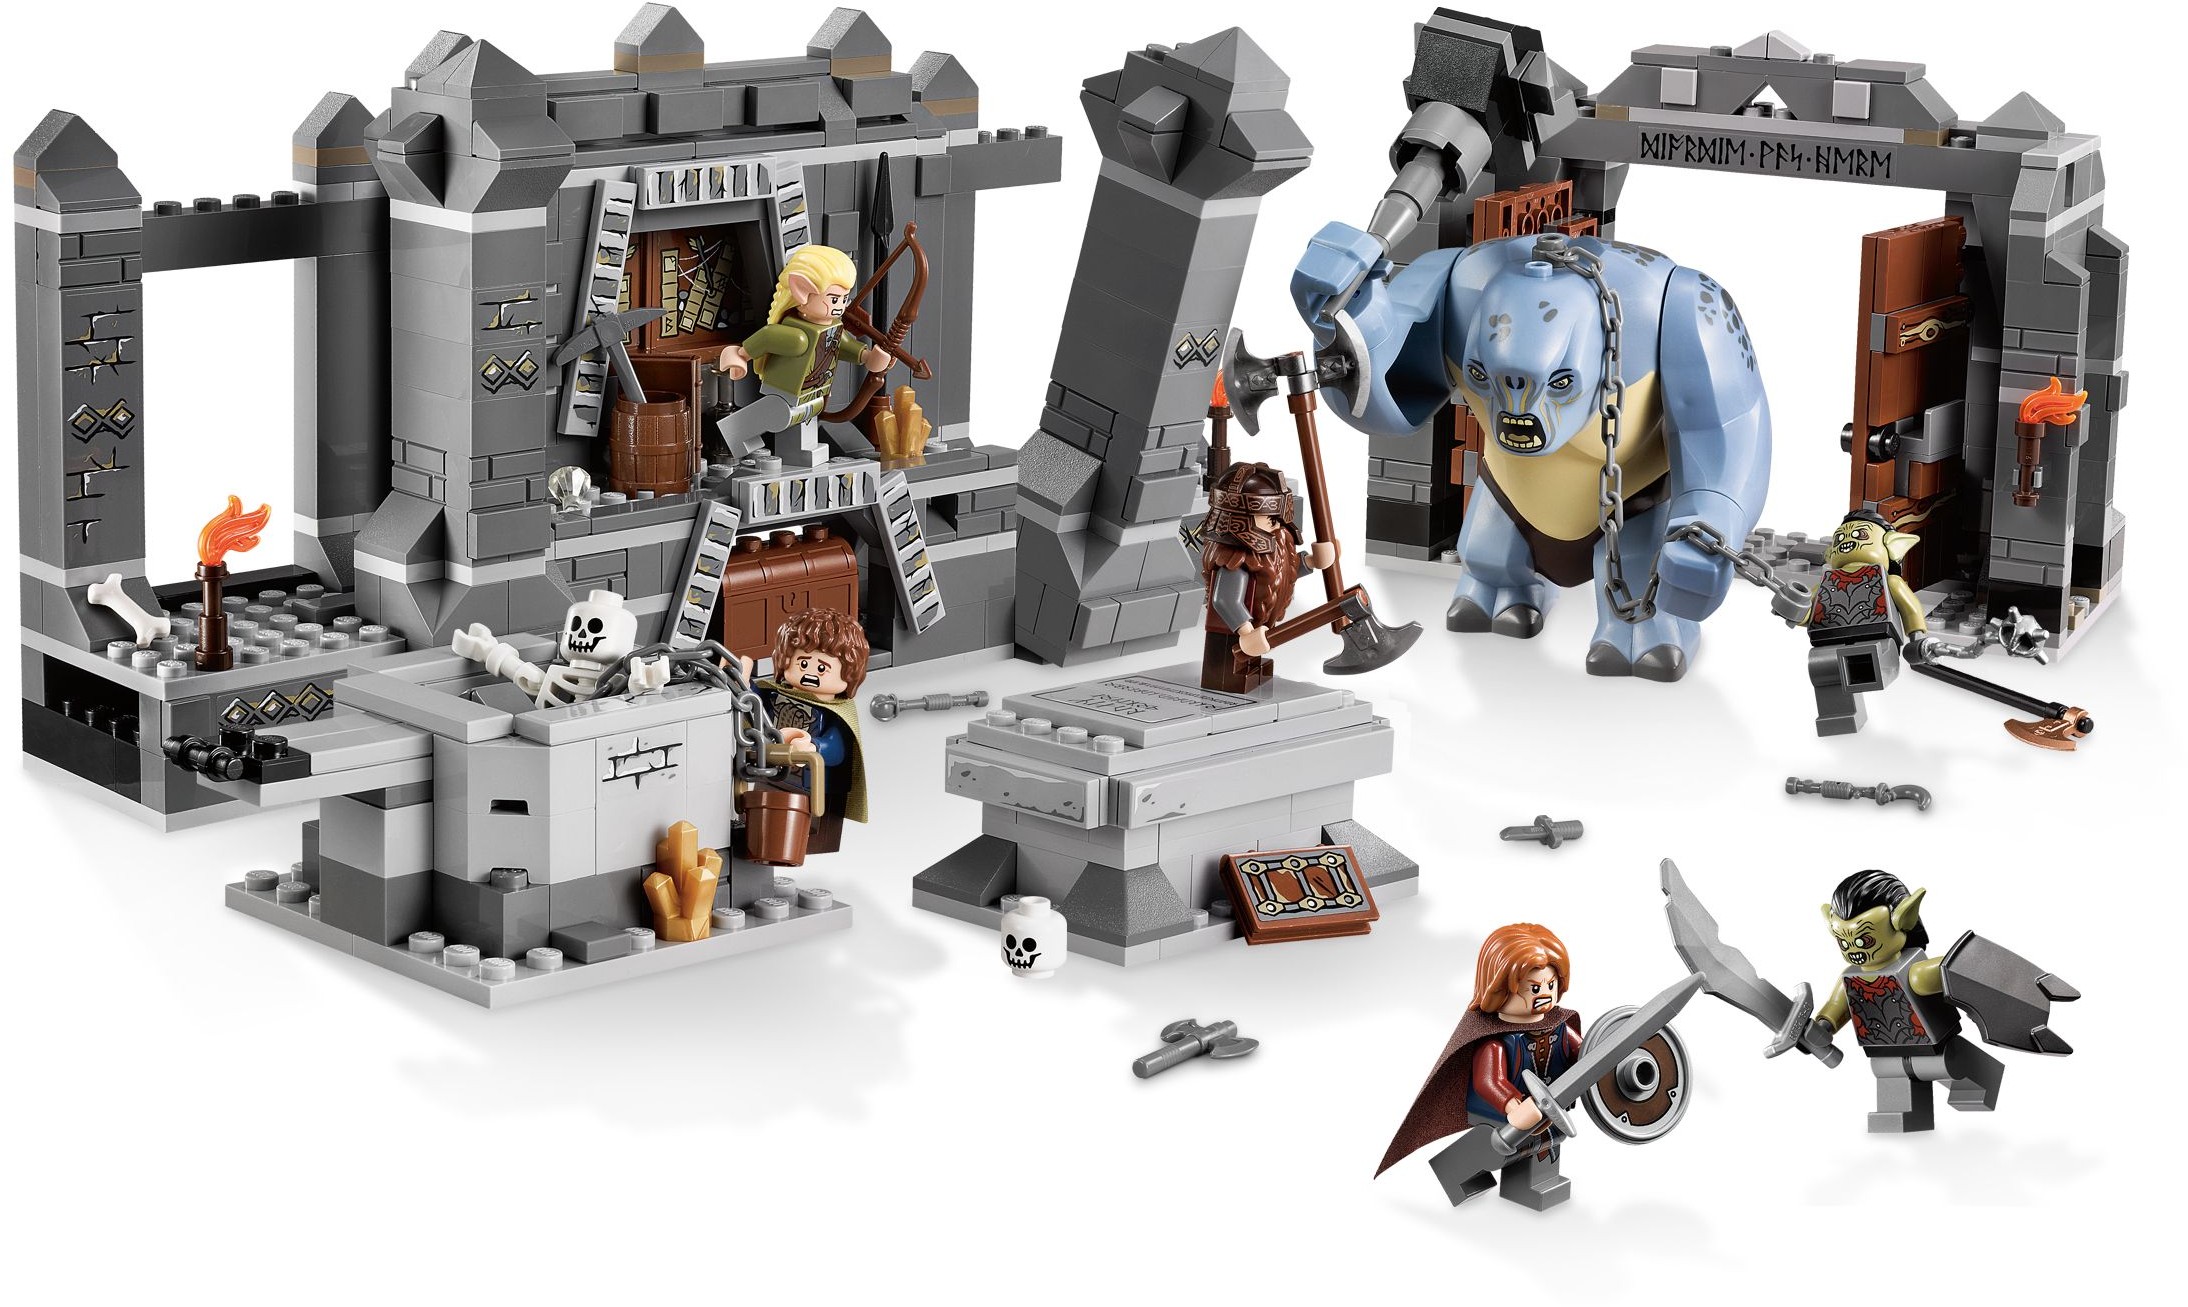 Il Signore degli anelli Lego: immagini e poster di Gollum, Aragorn, Frodo e  Legolas